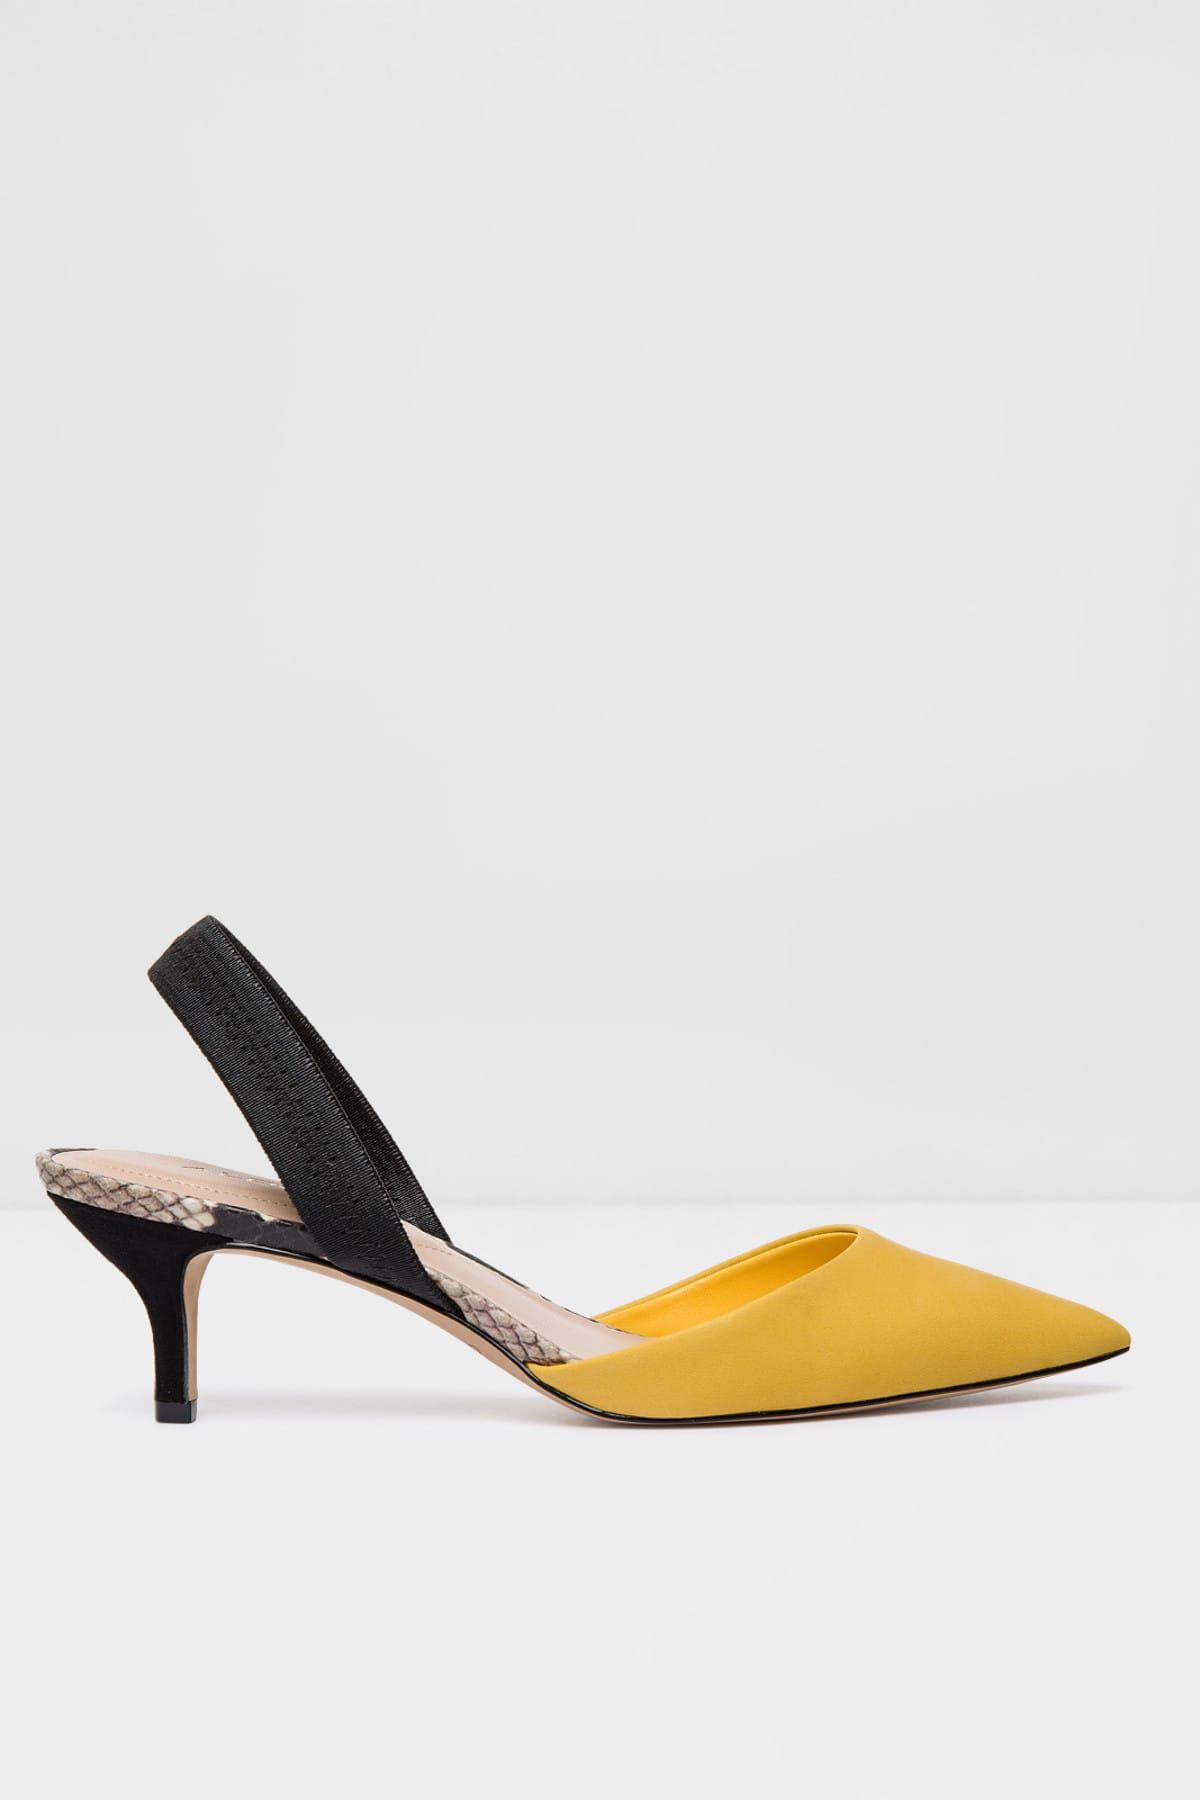 Aldo Kadın Sarı Klasik Topuklu Ayakkabı 95505